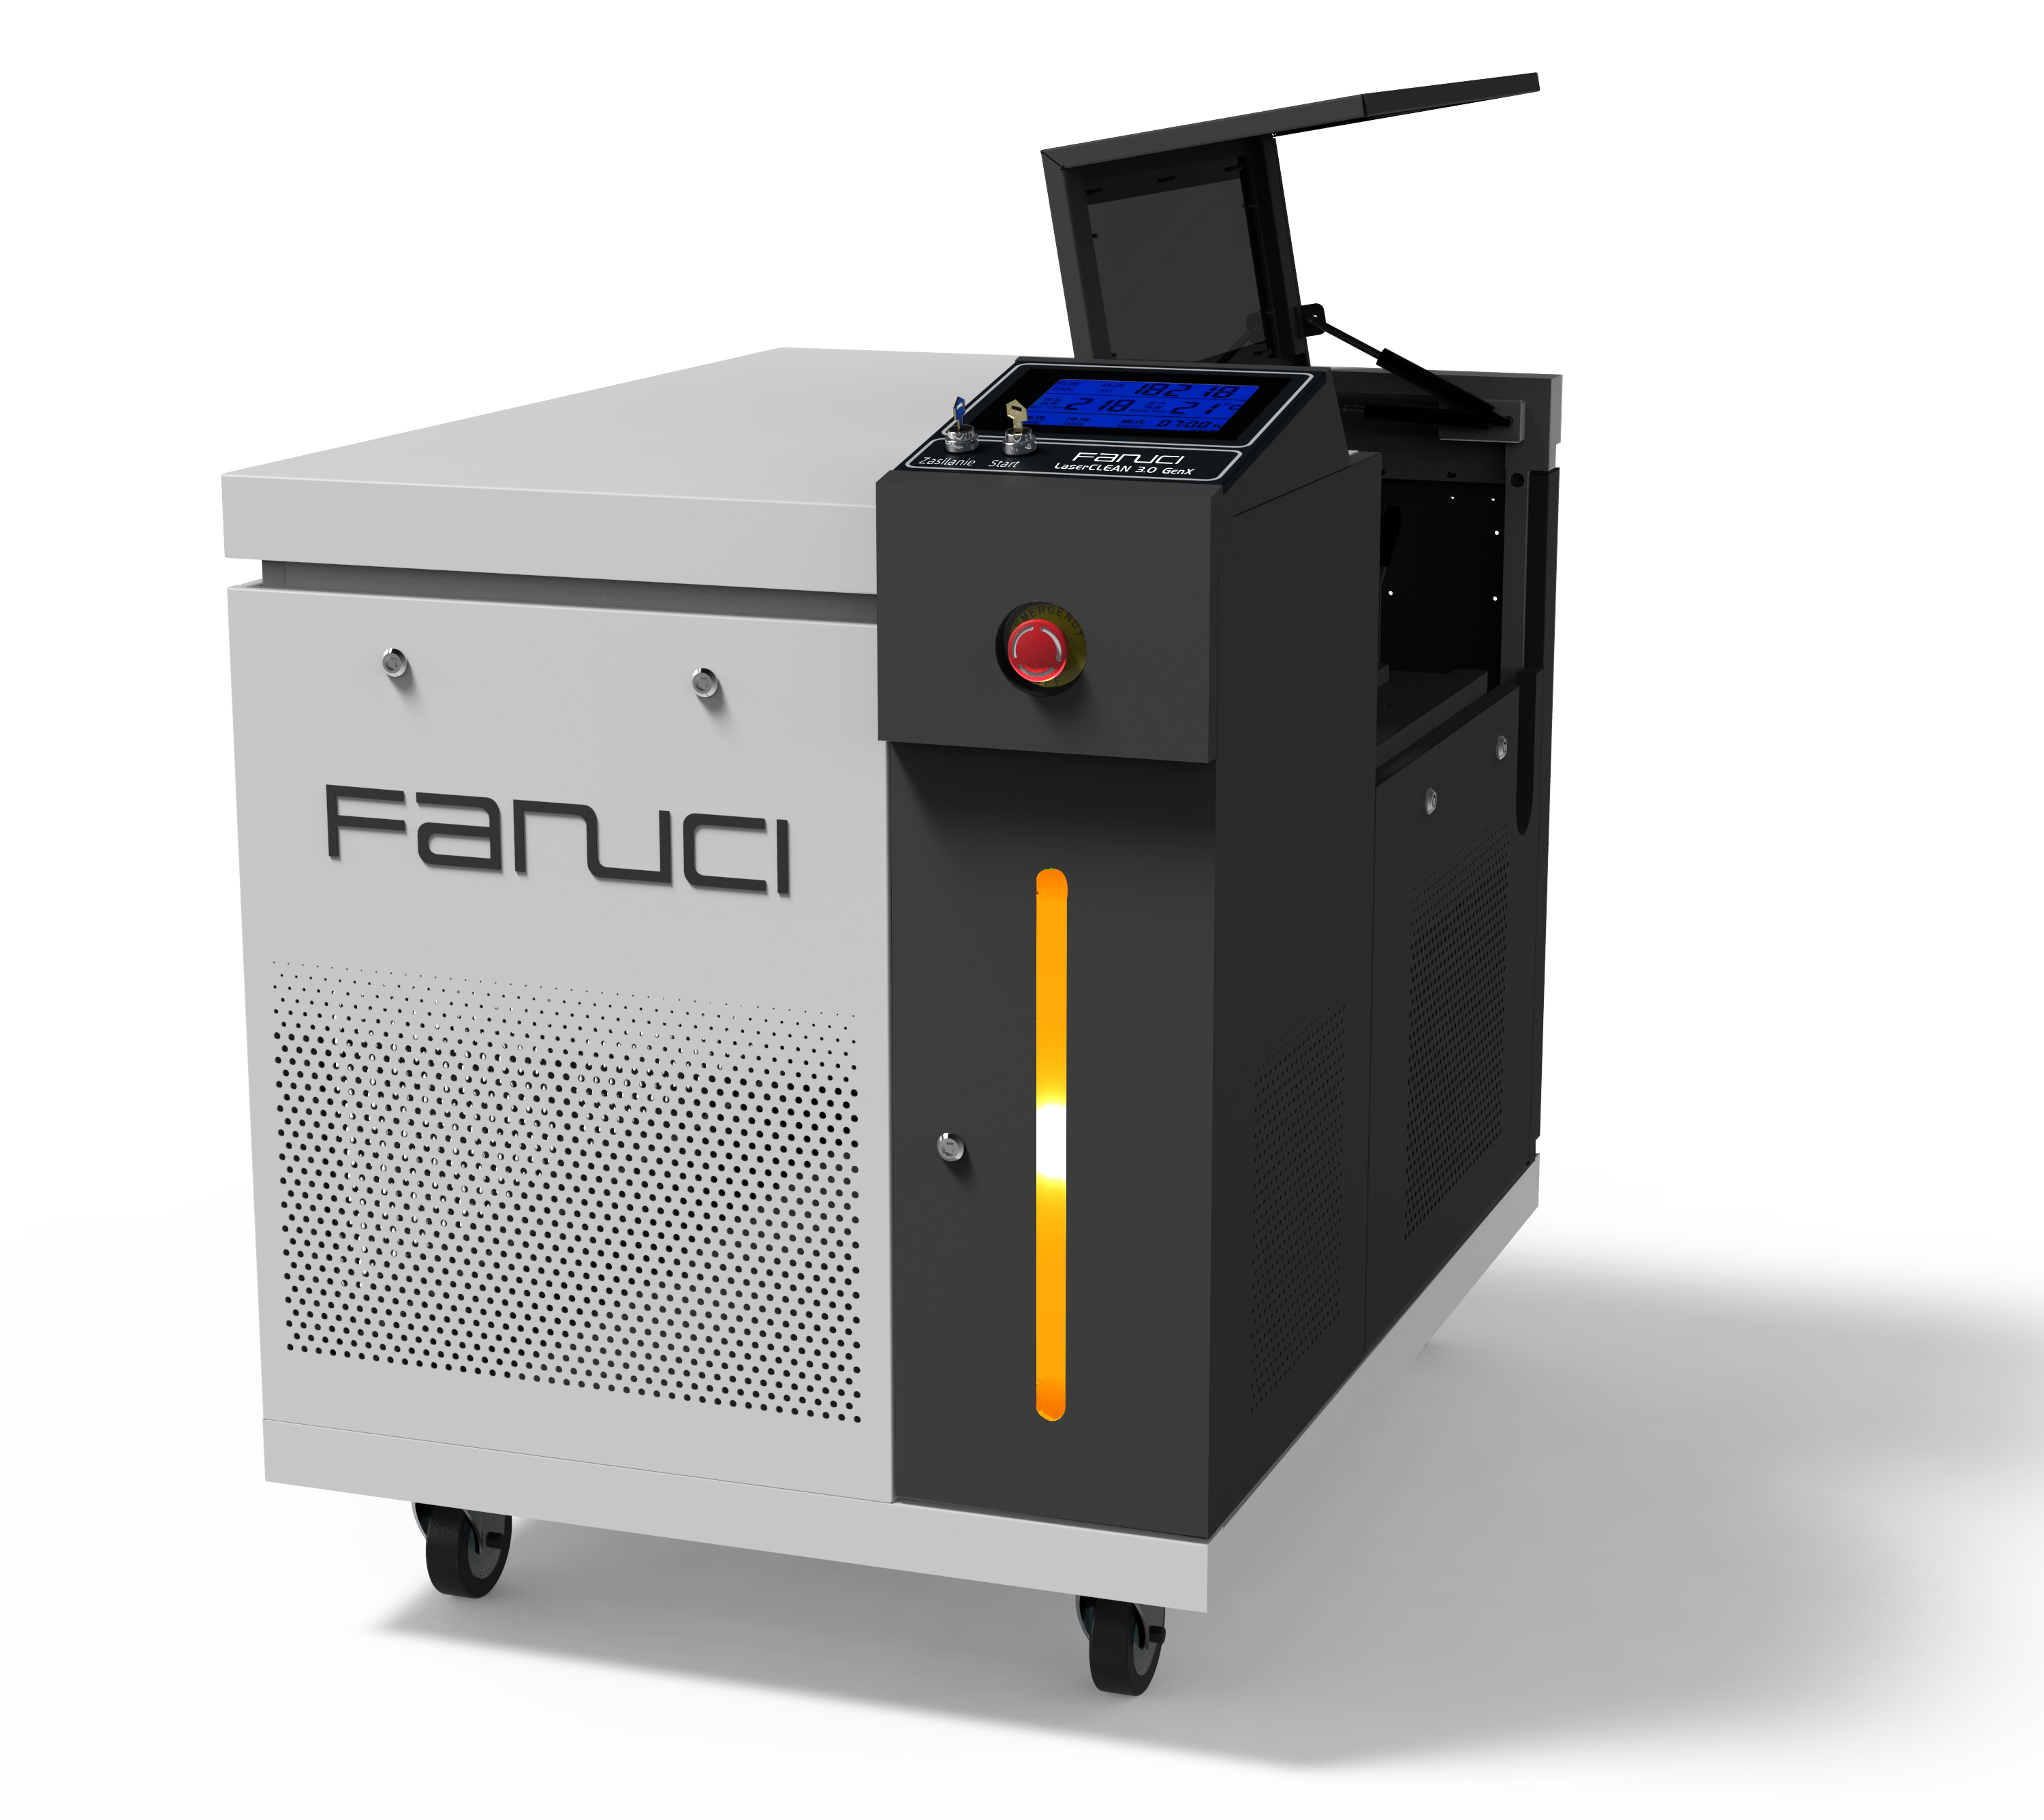 FANUCI® Pro 緊湊型四合一激光焊接機將發往歐洲